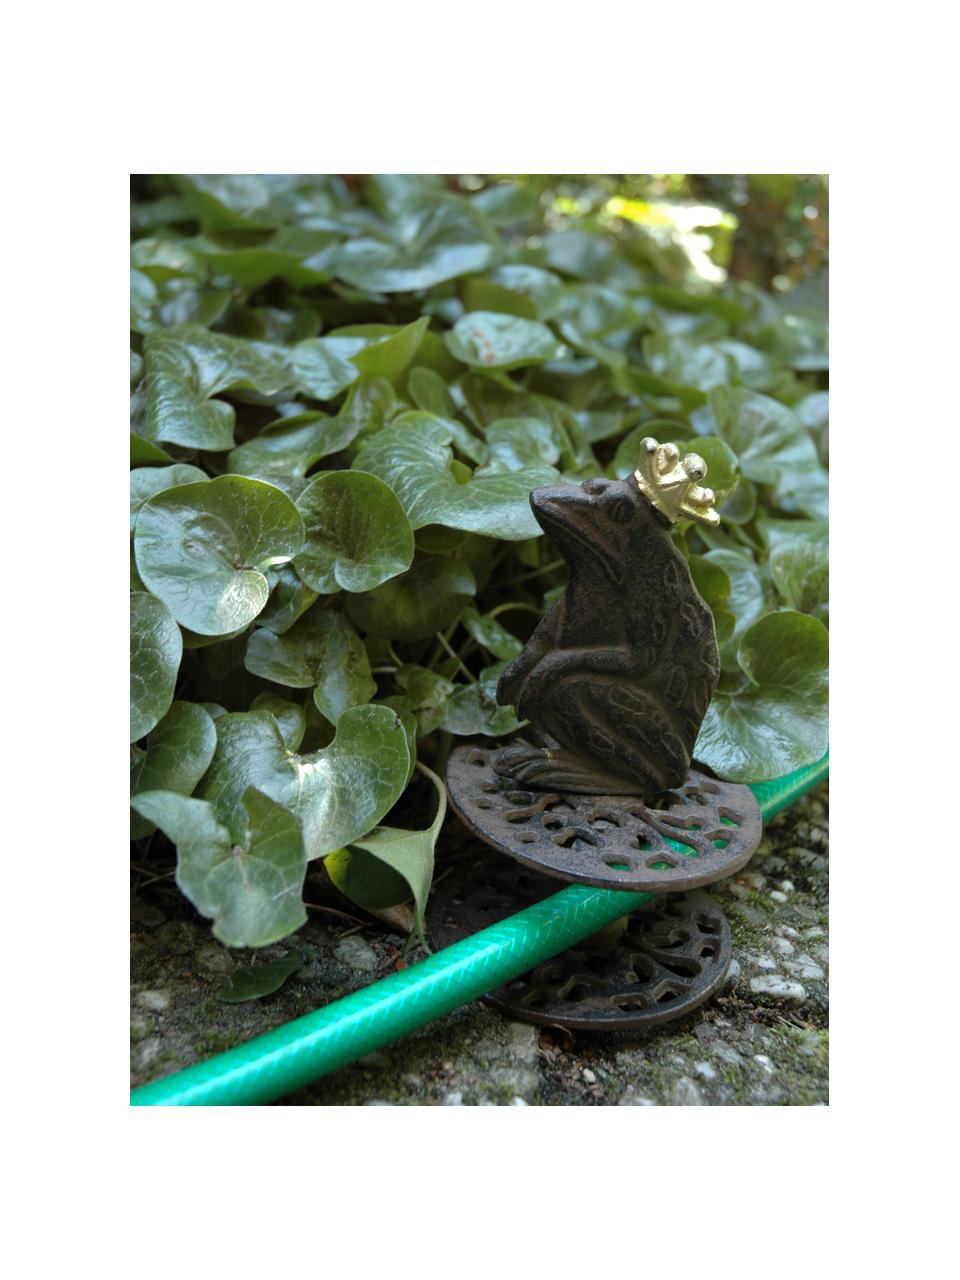 Vodítko zahradní hadice Frog, Potažený kov, Hnědá, Ø 10 cm, V 33 cm